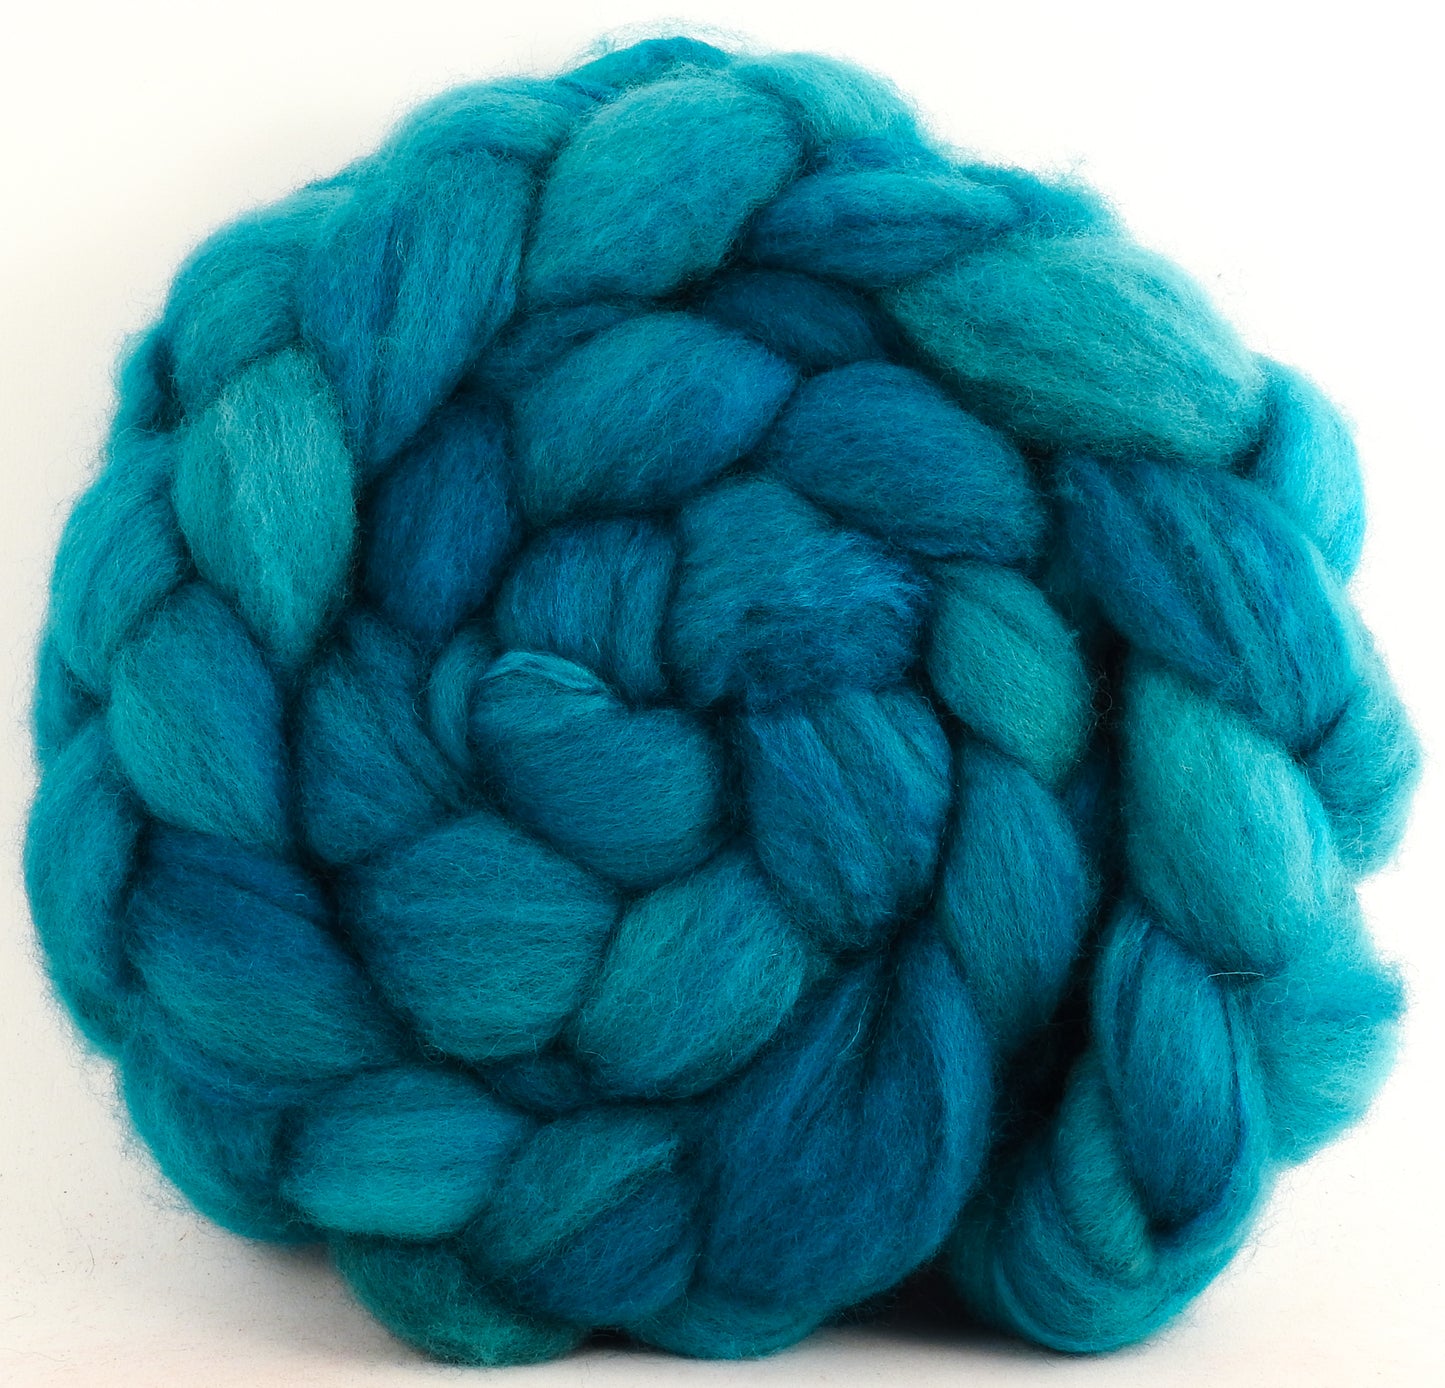 Poseidon - Blue-faced Leicester/ Tussah Silk (70/30) - (5.6 oz.)